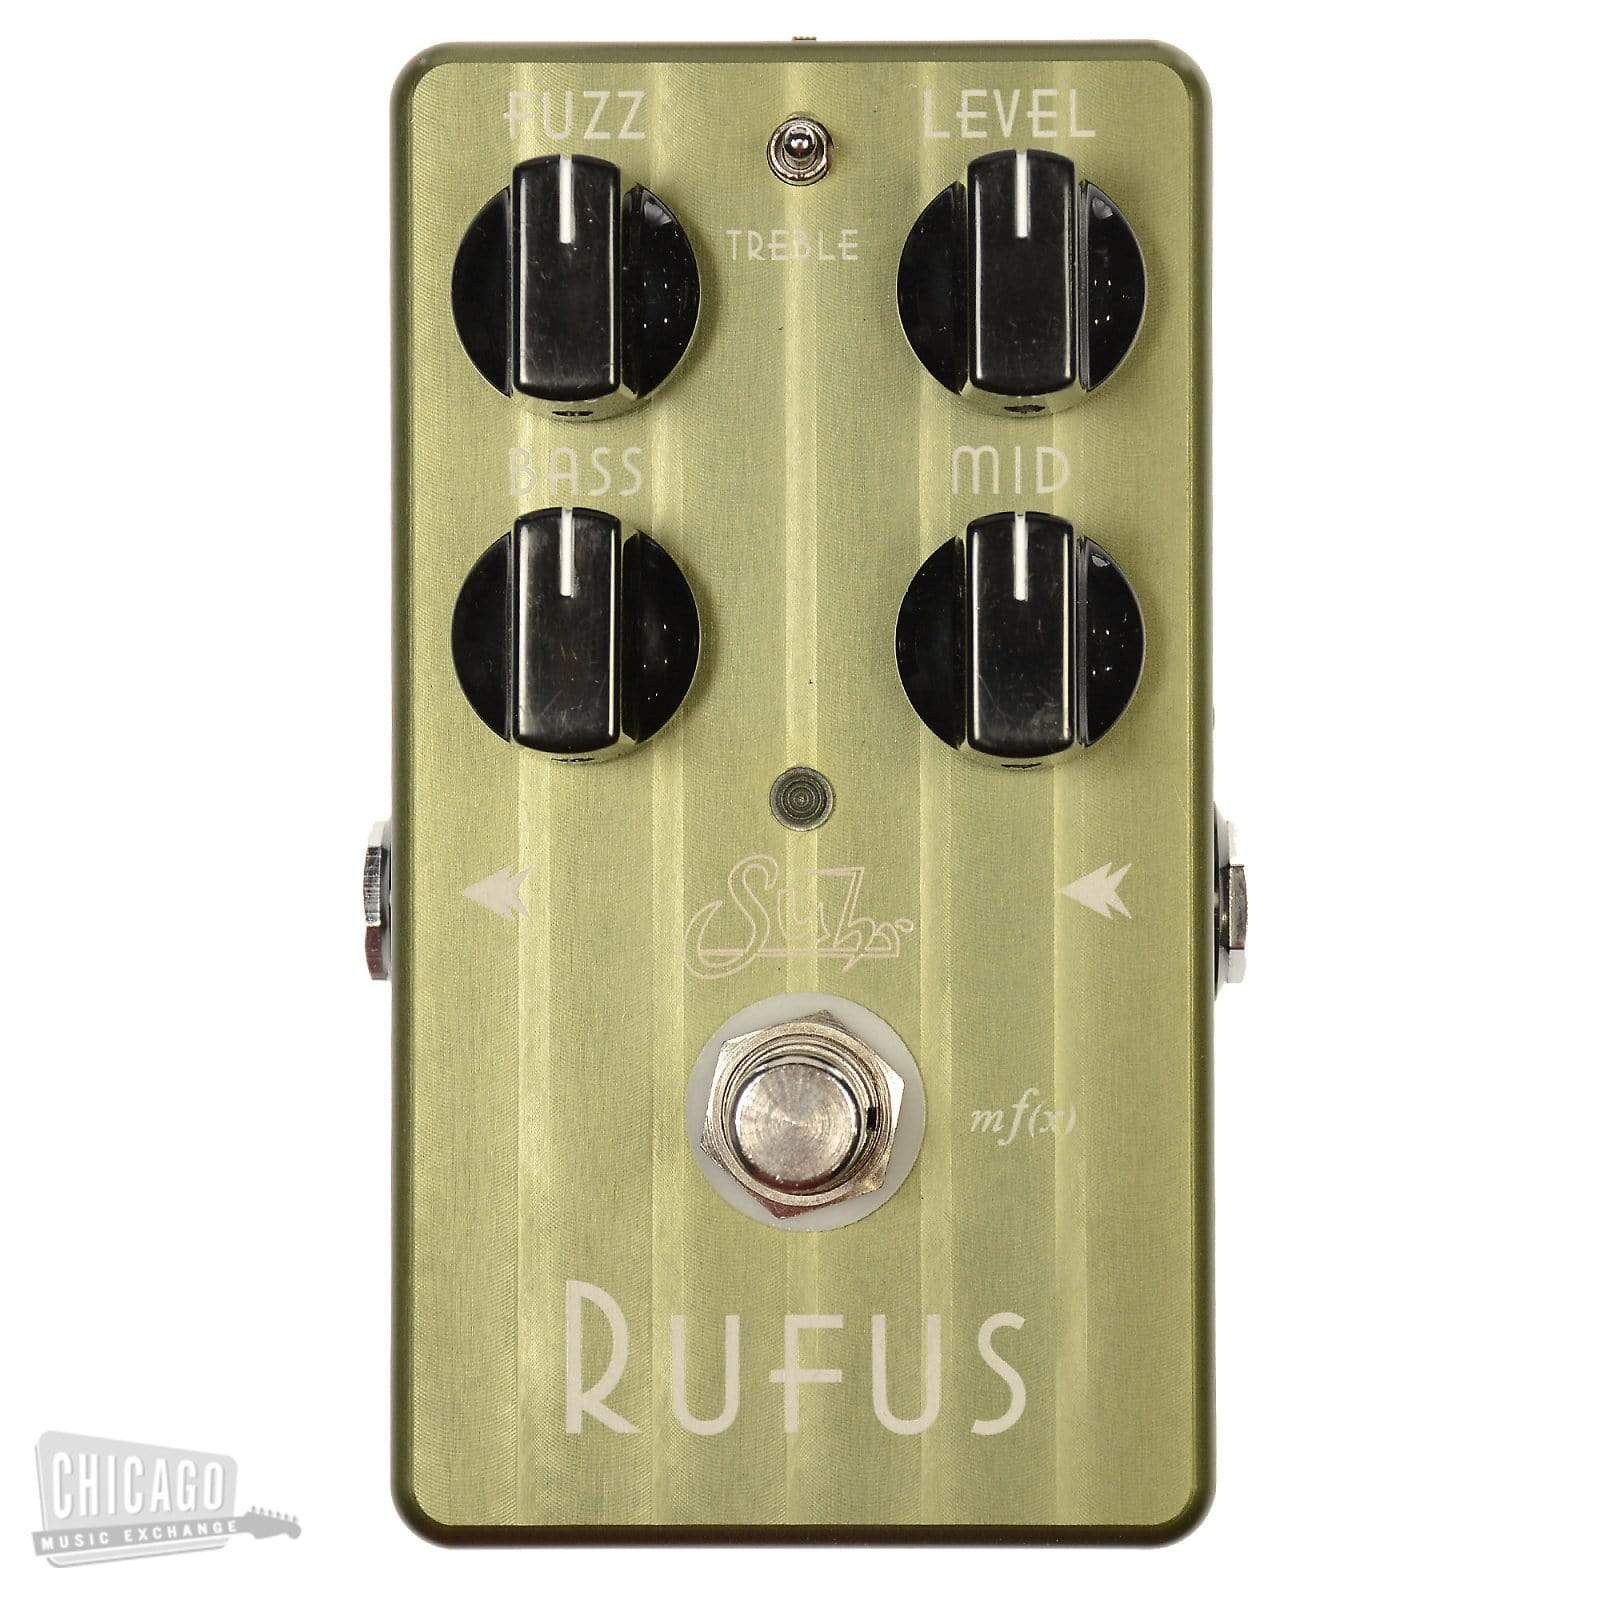 Suhr Rufus Fuzz – Chicago Music Exchange